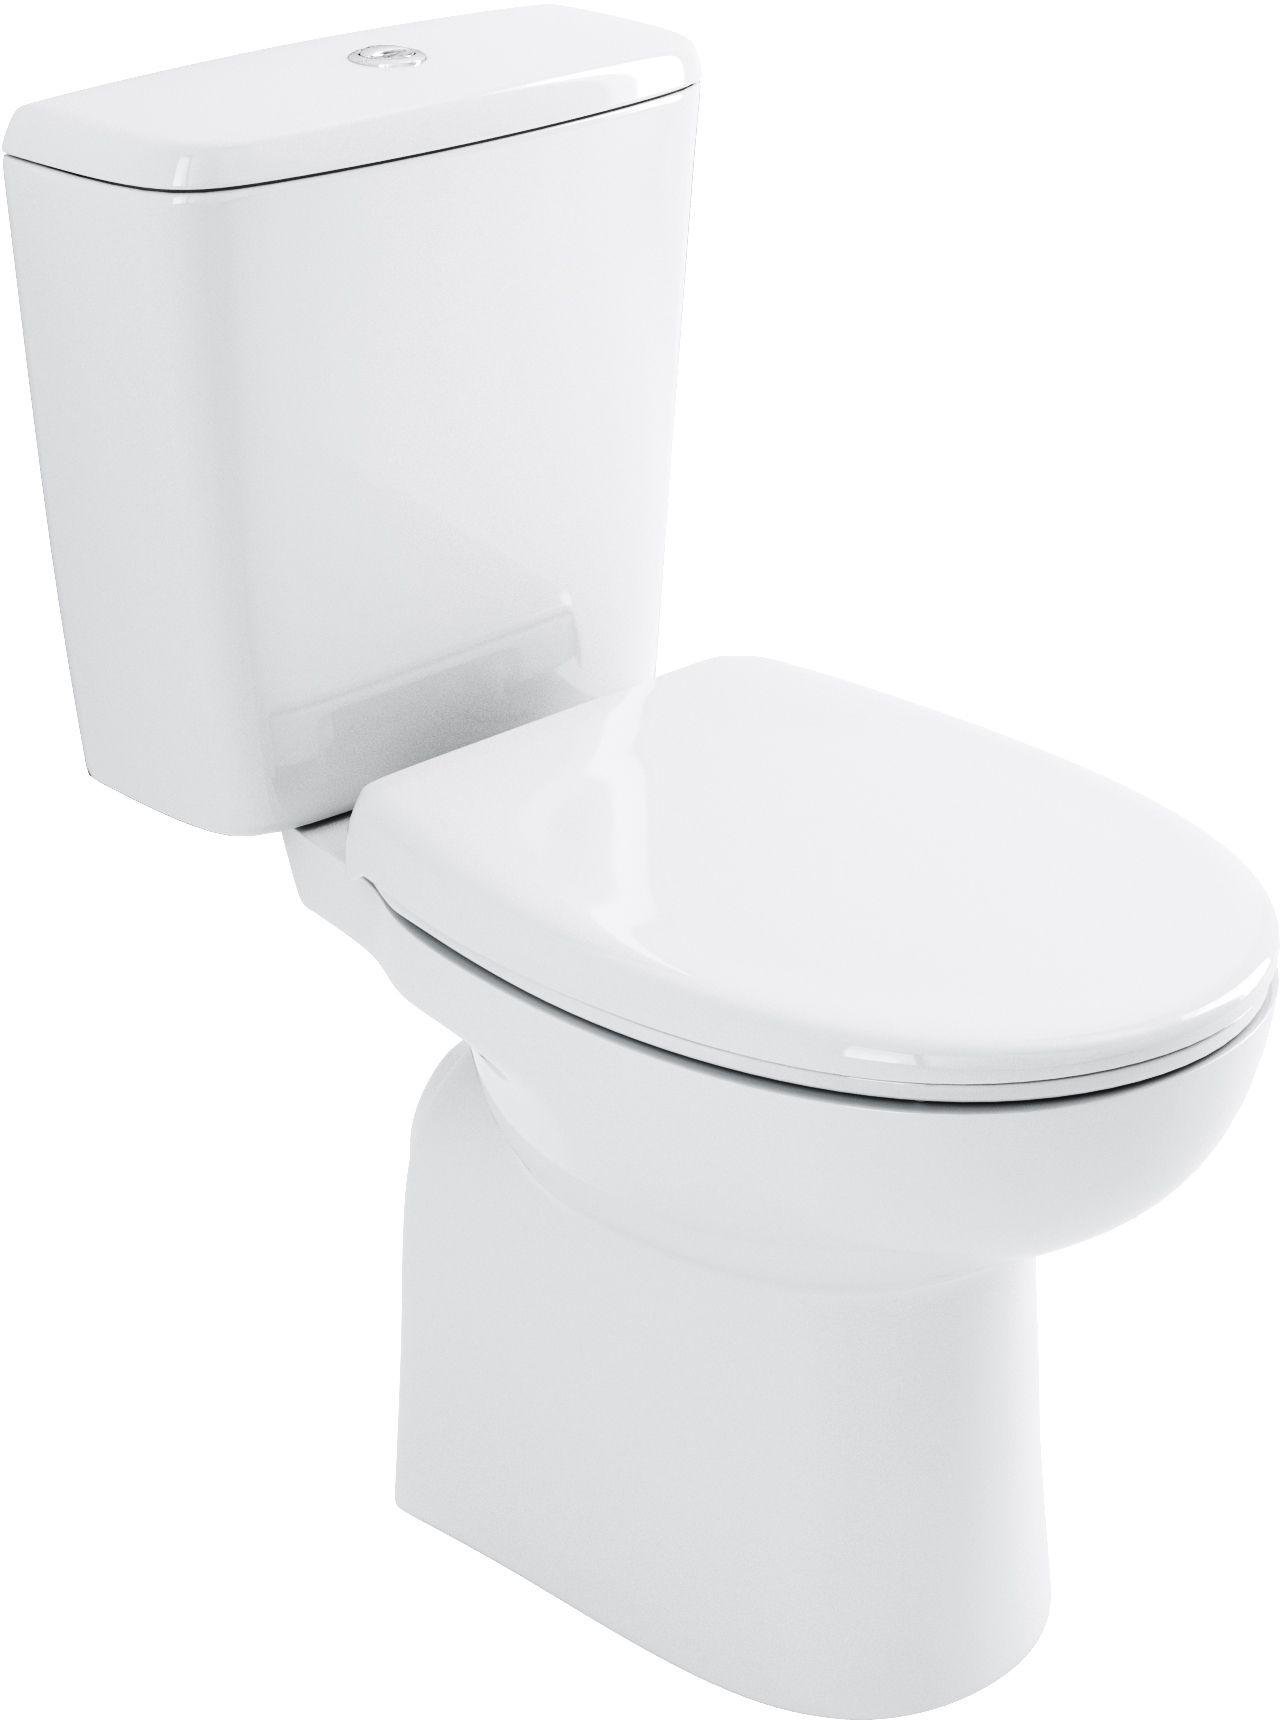 Lavari Minispace Toilet and Standard Seat